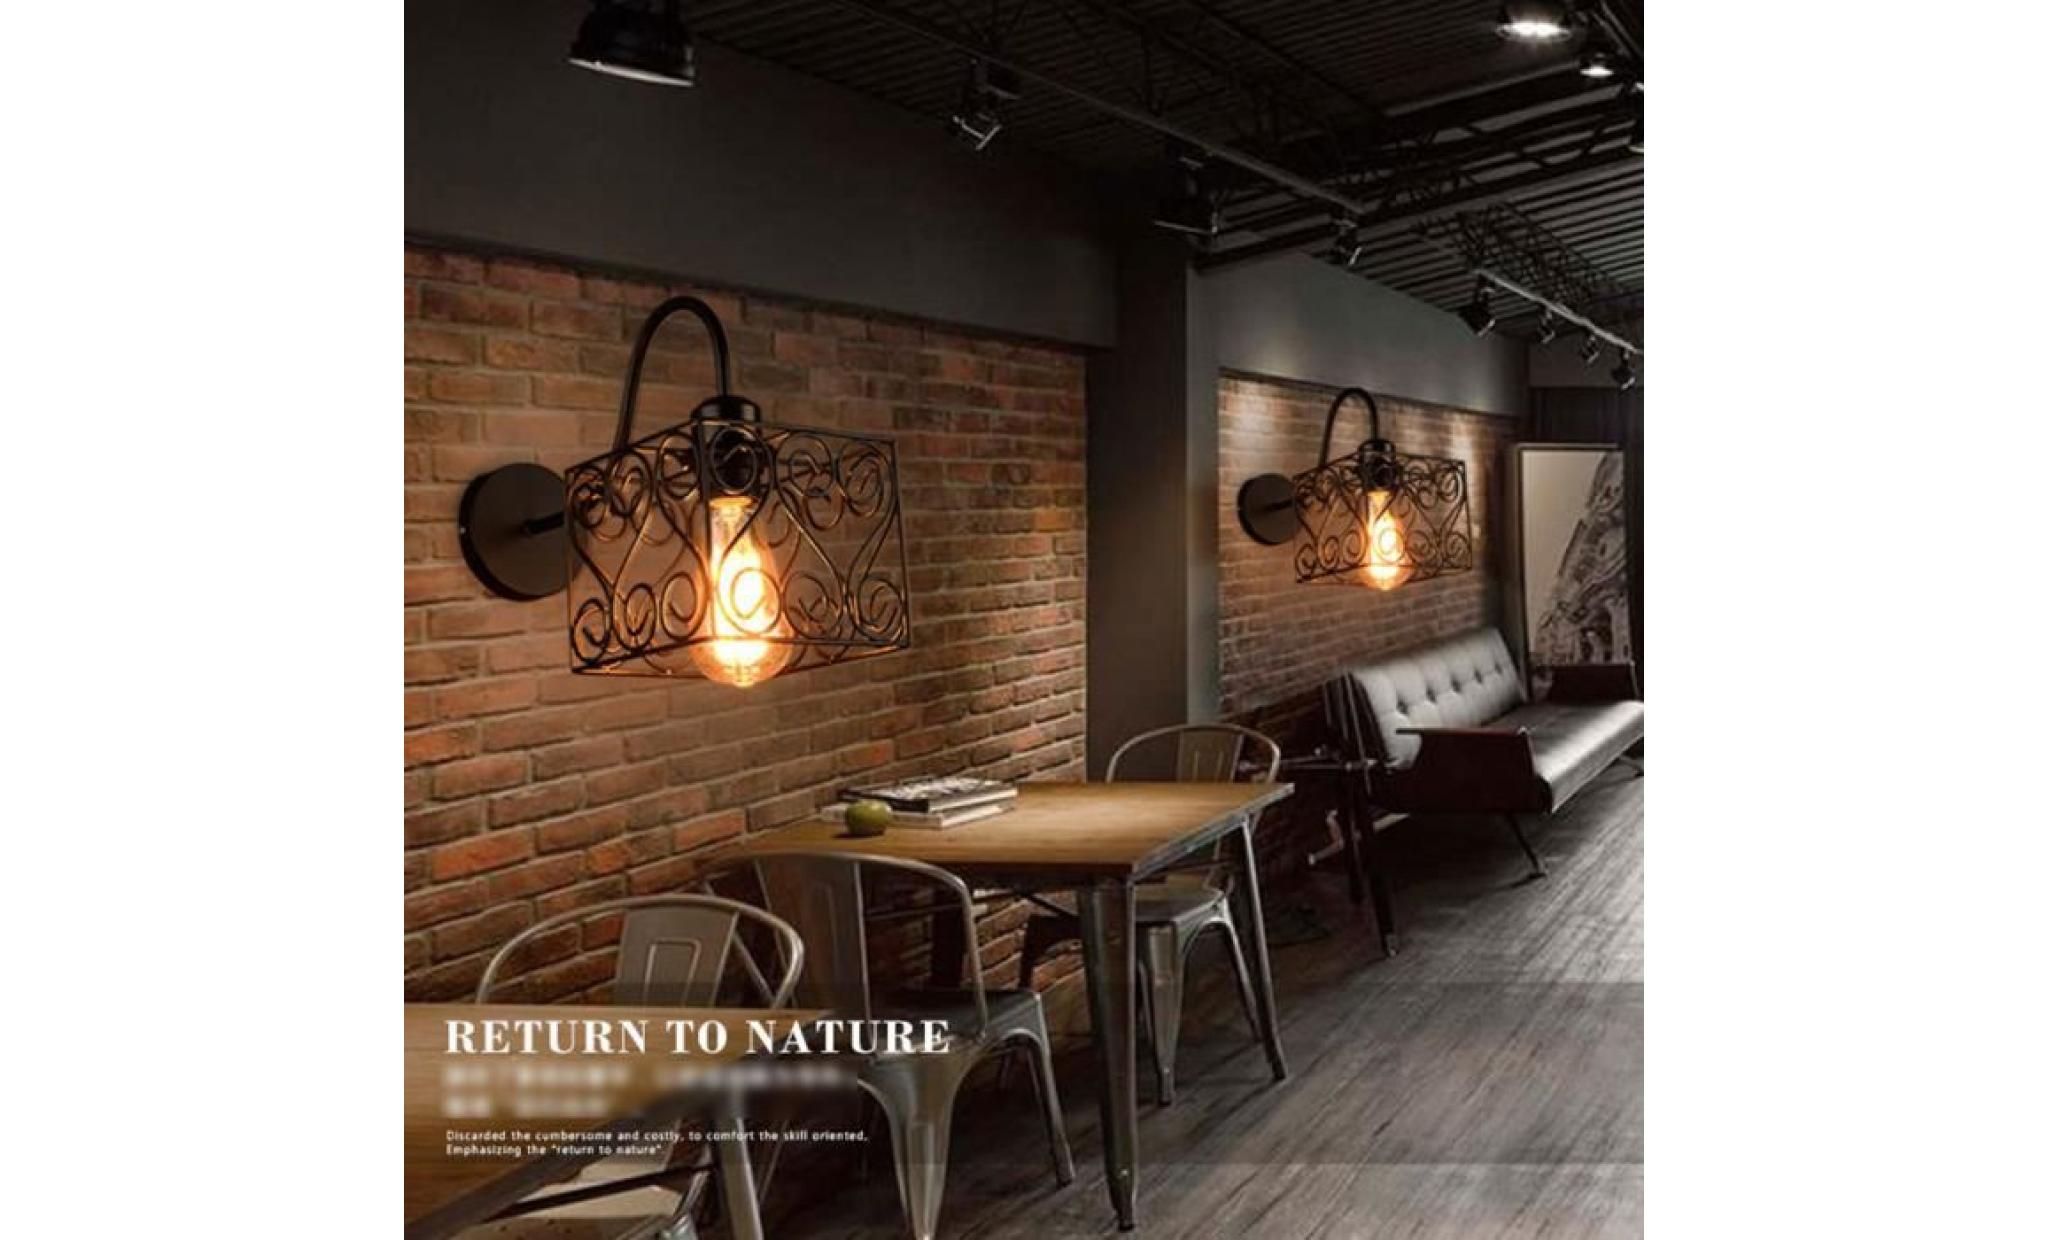 rétro vintage applique loft lampe murale réglable mur de feu edison cage de fer e27 industriel décor couloir bar café hôtel style e